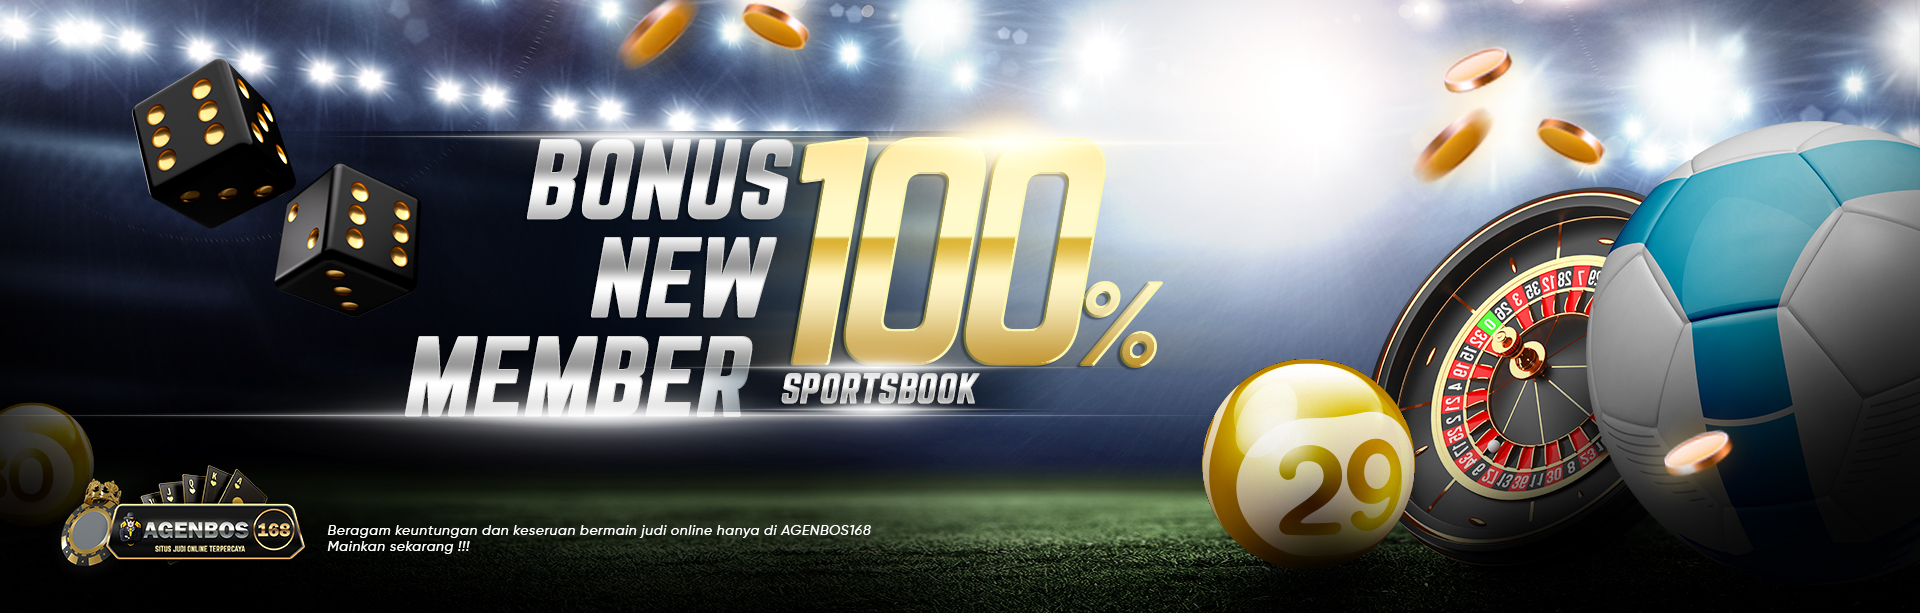 Bonus member baru sportsbook 100%